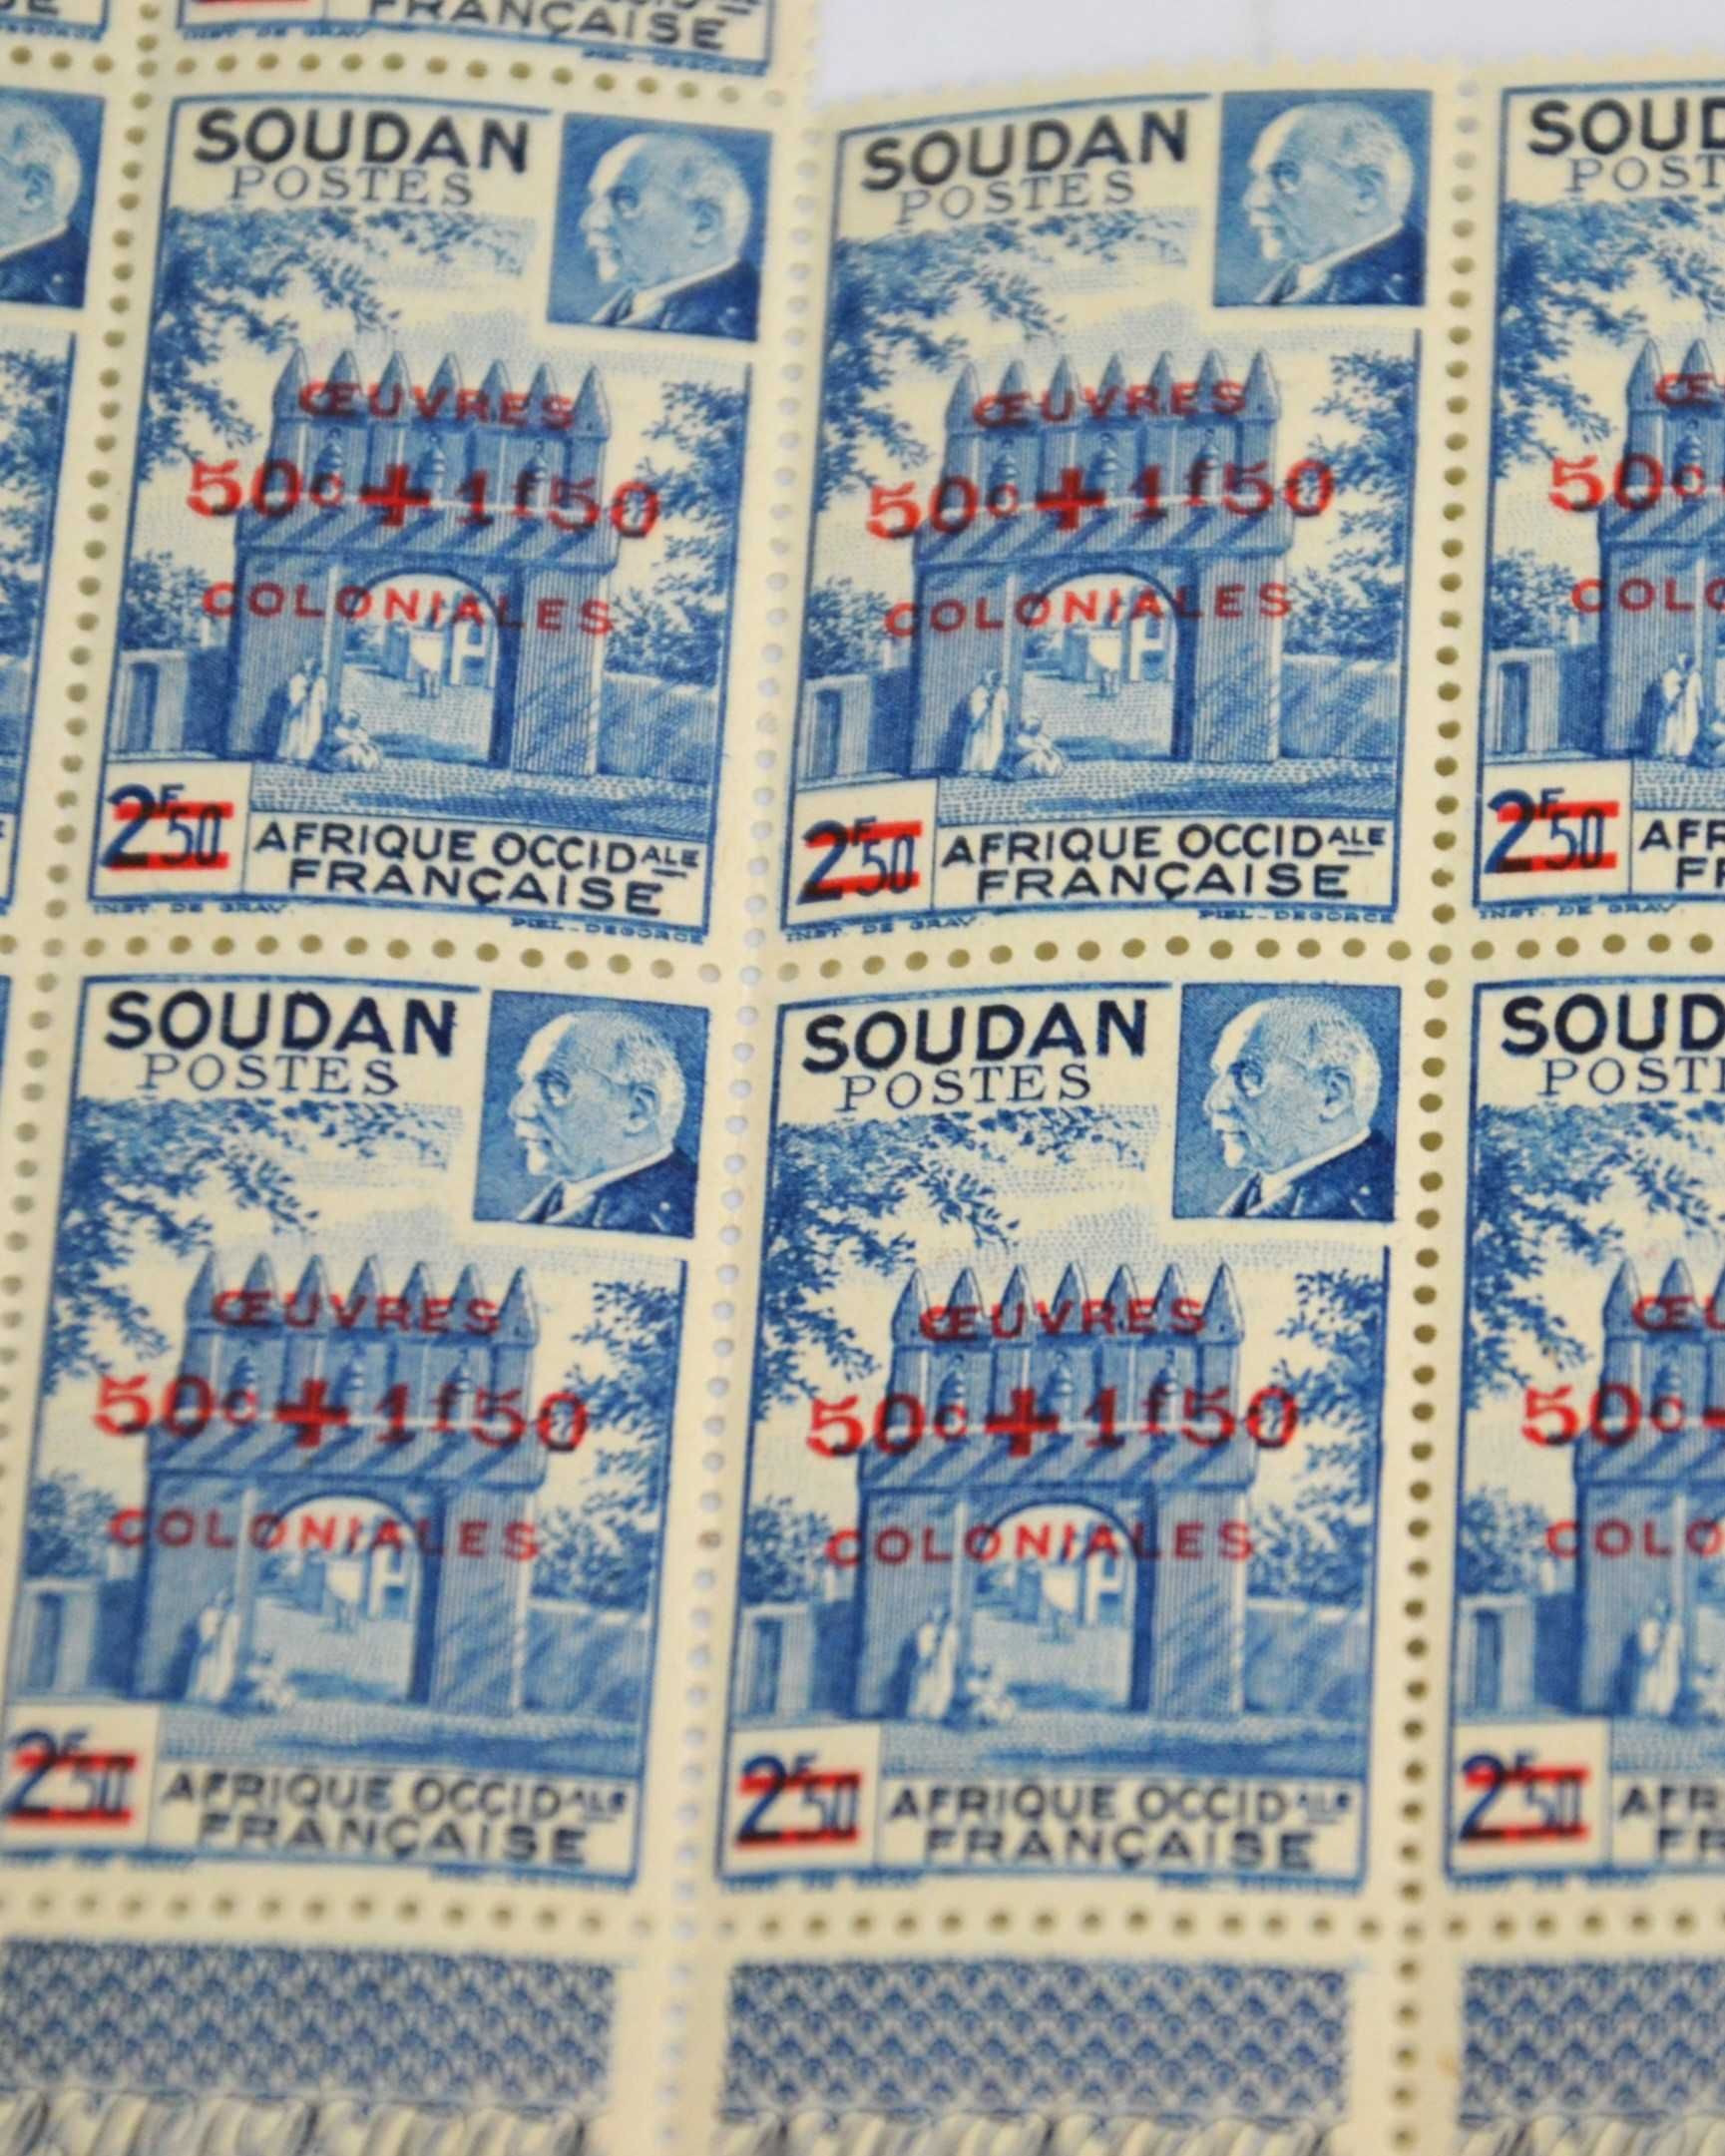 Sudan brama meczetu Djenne kolonie francuskie Vichy Pétain 1944r